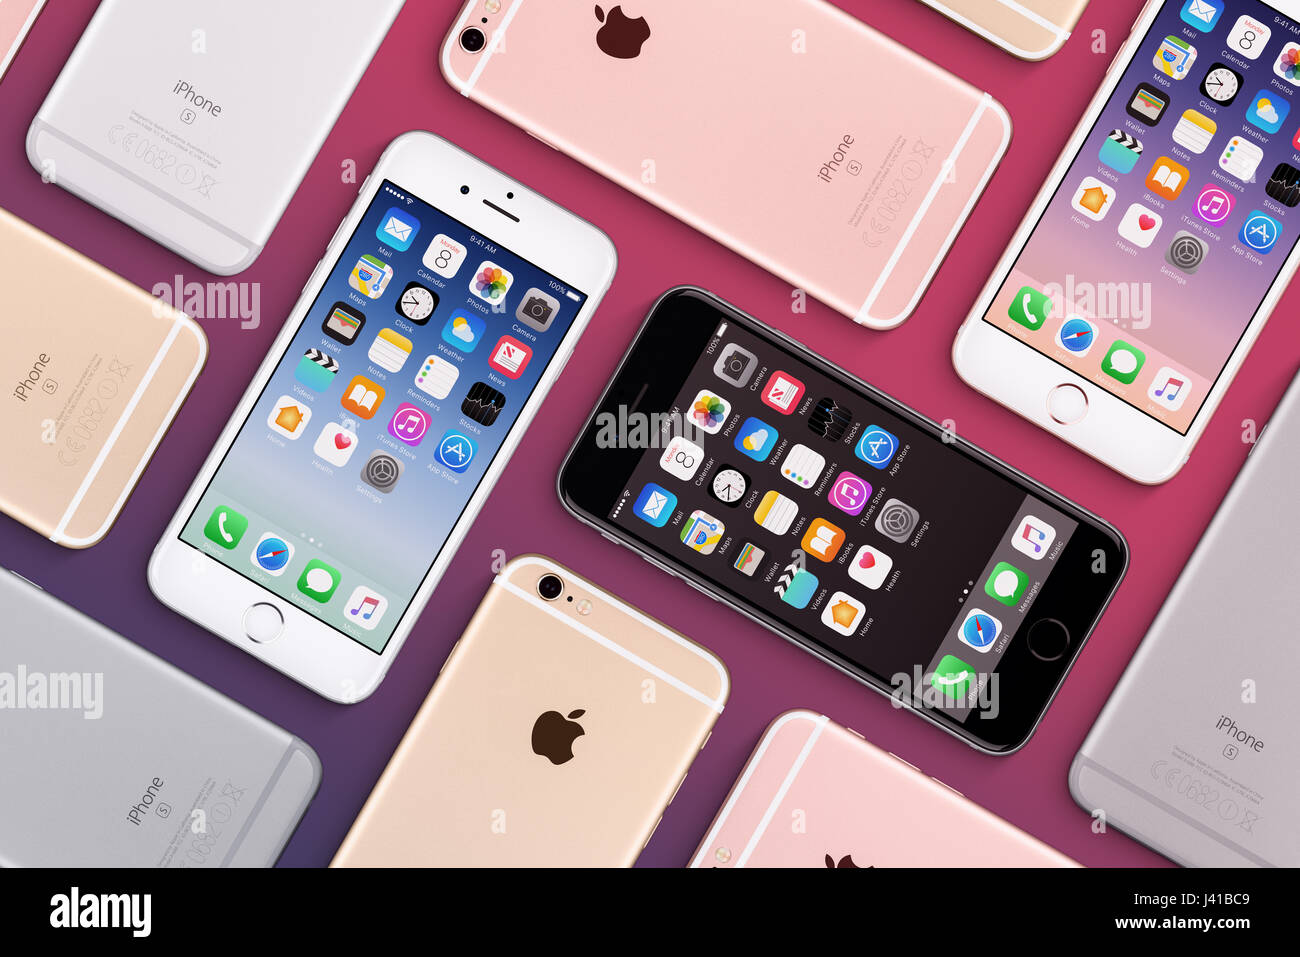 Reihe von bunten Apple iPhones 6 s flach legen Draufsicht mit iOS 10 auf dem Bildschirm Stockfoto